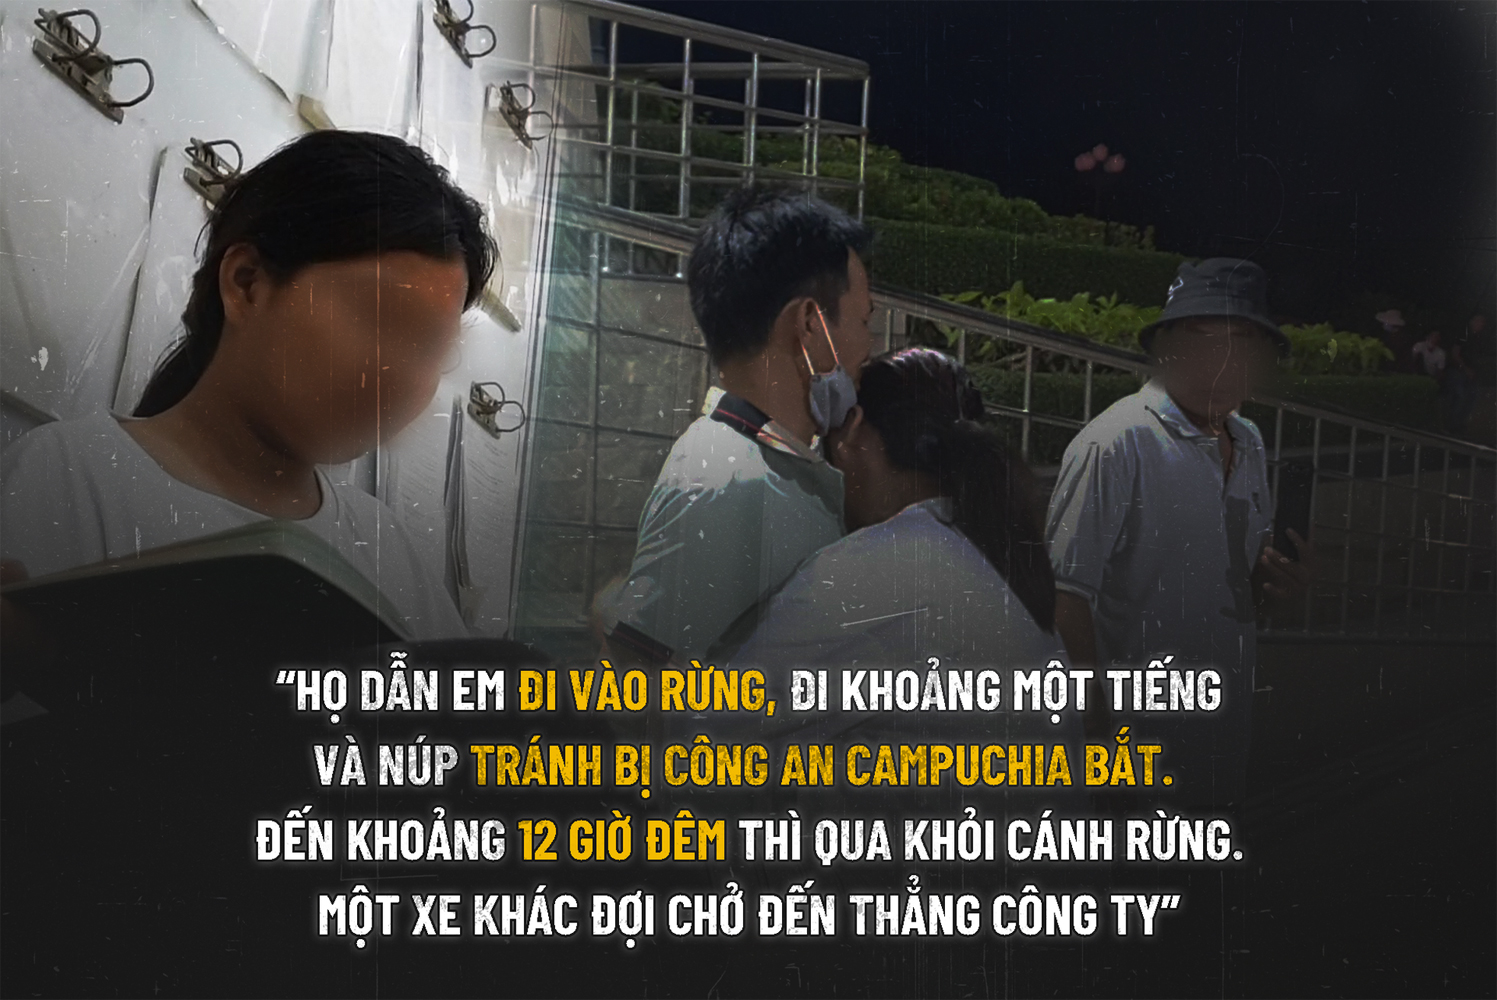 Bé gái 13 tuổi bị lừa bán sang Campuchia - 33